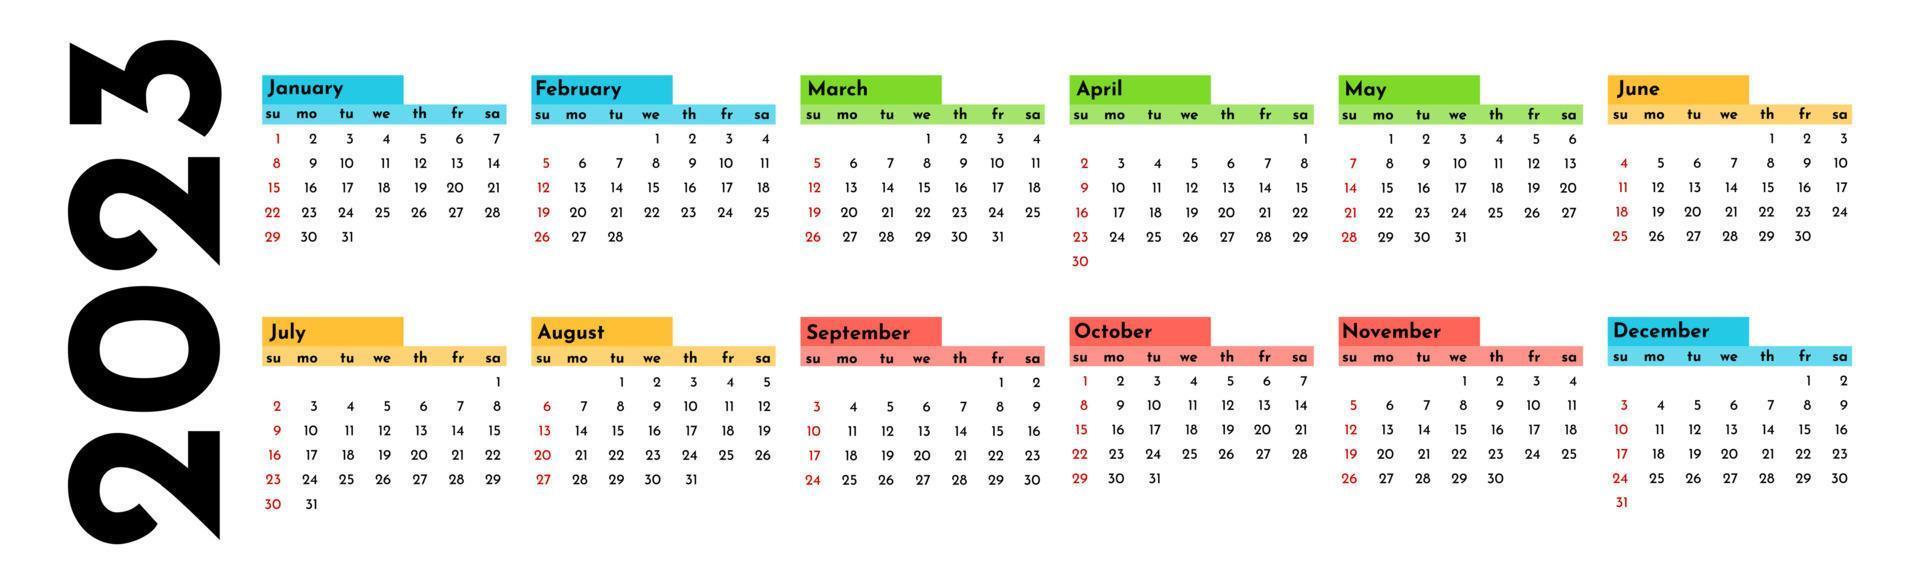 Kalender für 2023 isoliert auf weißem Hintergrund vektor